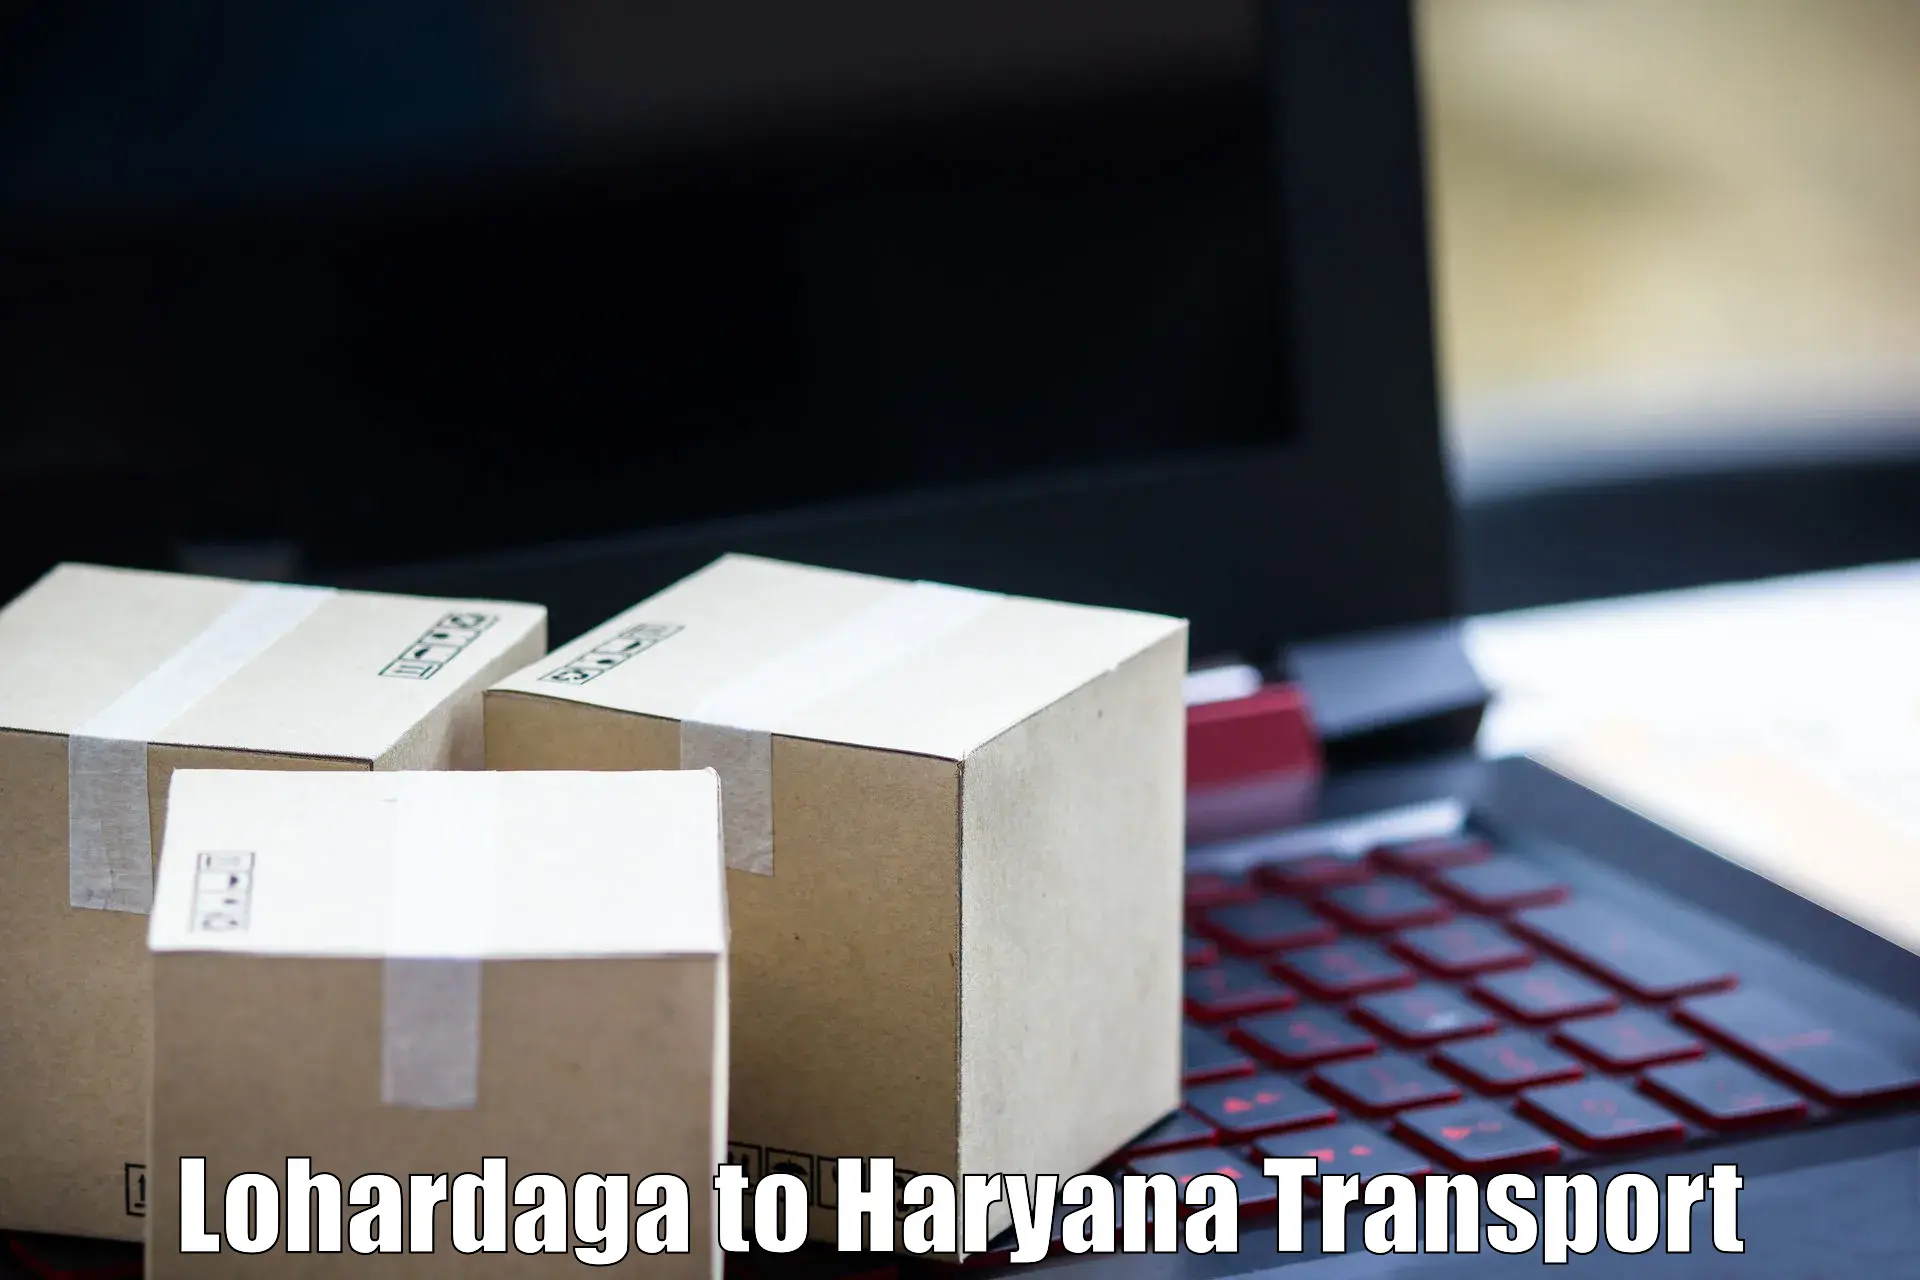 Nationwide transport services Lohardaga to Gurgaon